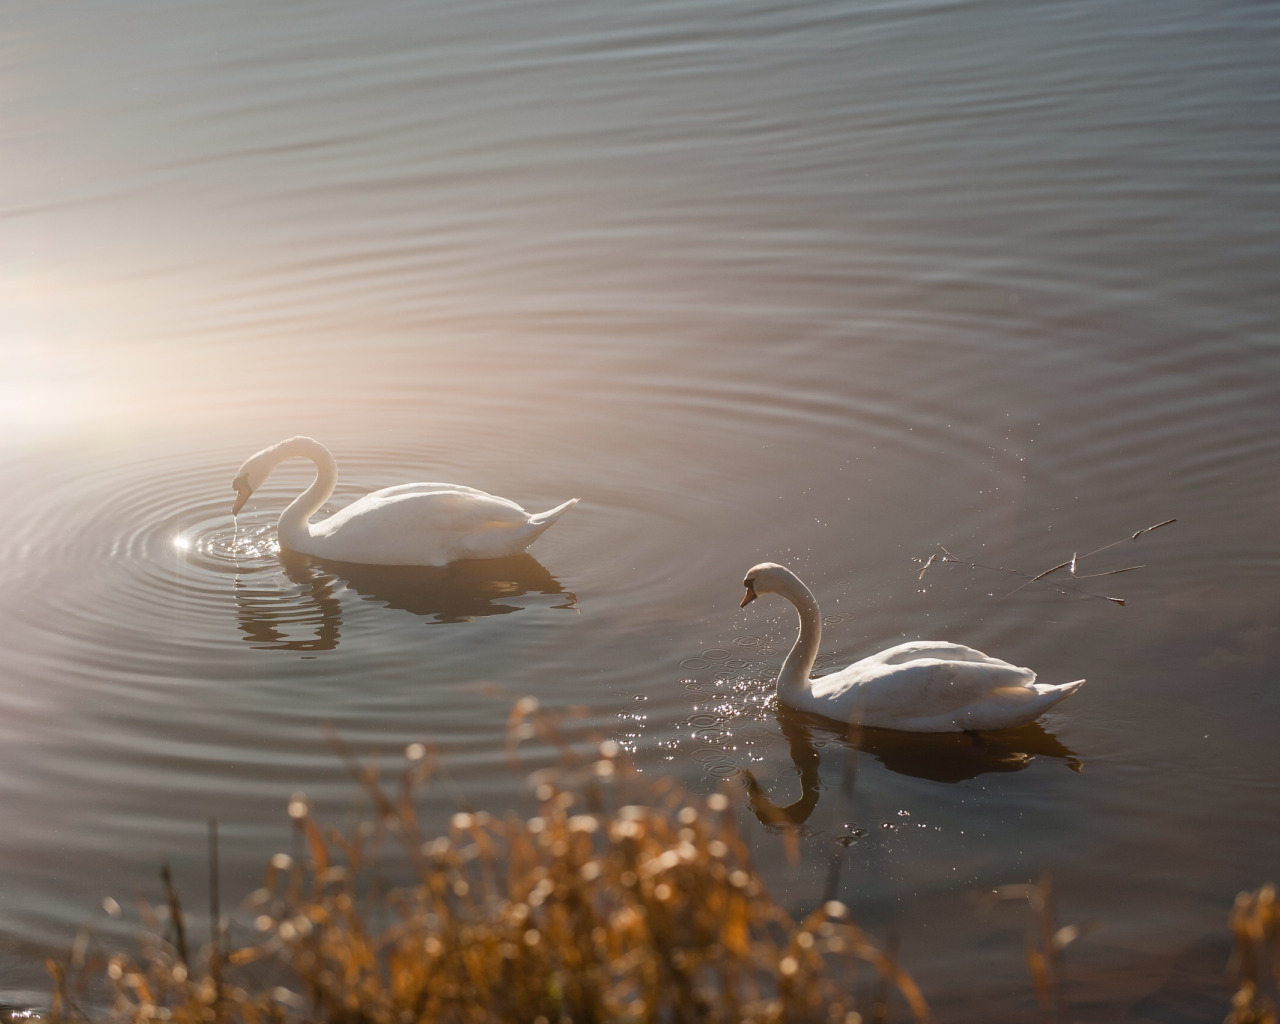 Будет озеро будут лебеди. Лебеди на озере. Природа озеро лебеди. Пейзаж с лебедями. Лебеди в тумане.